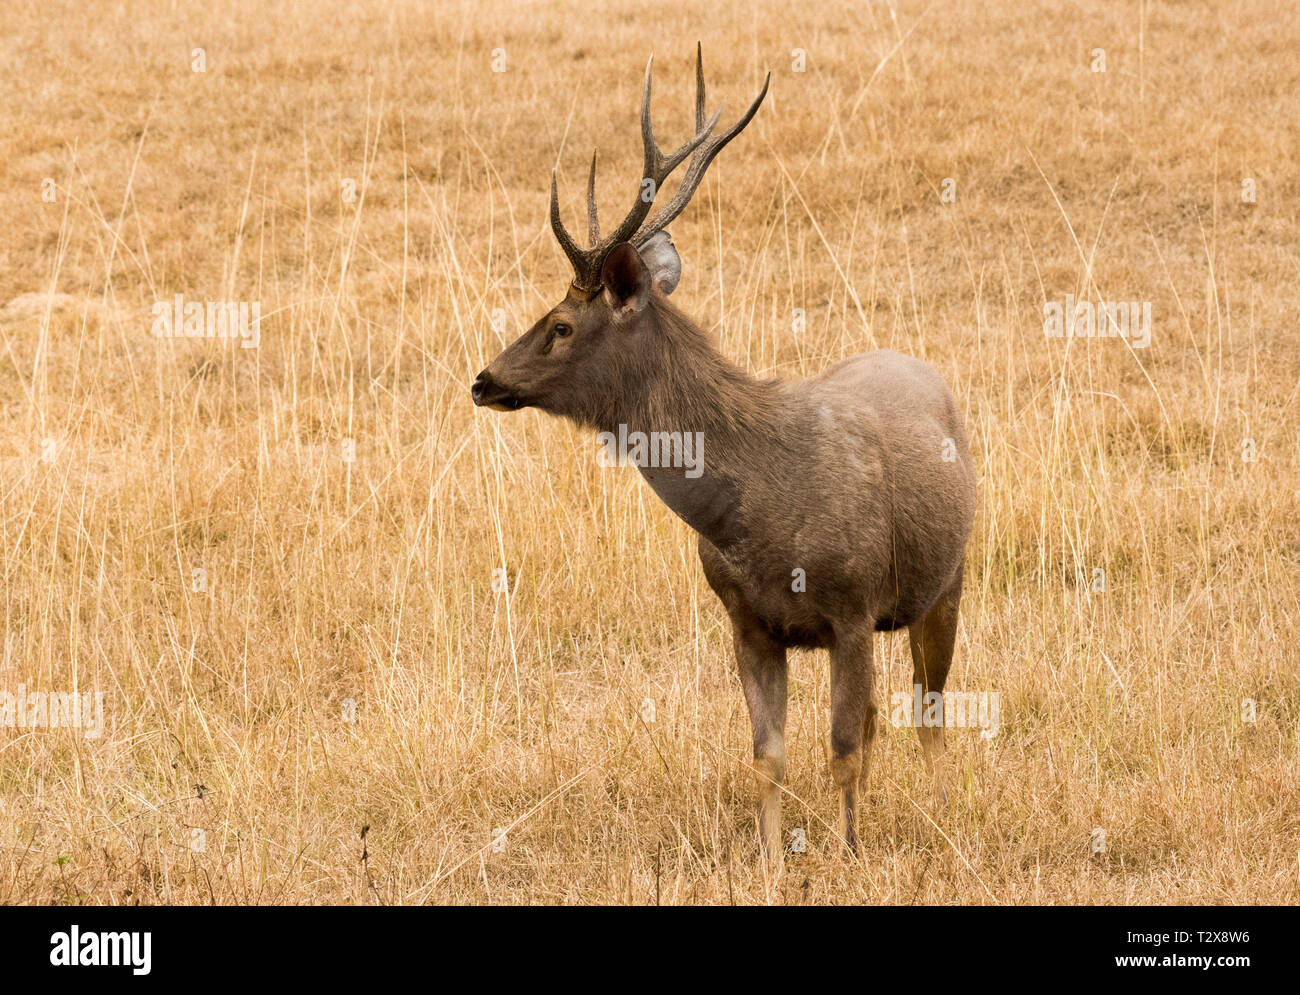 Standing view of sambar deer Stock Photo - Alamy